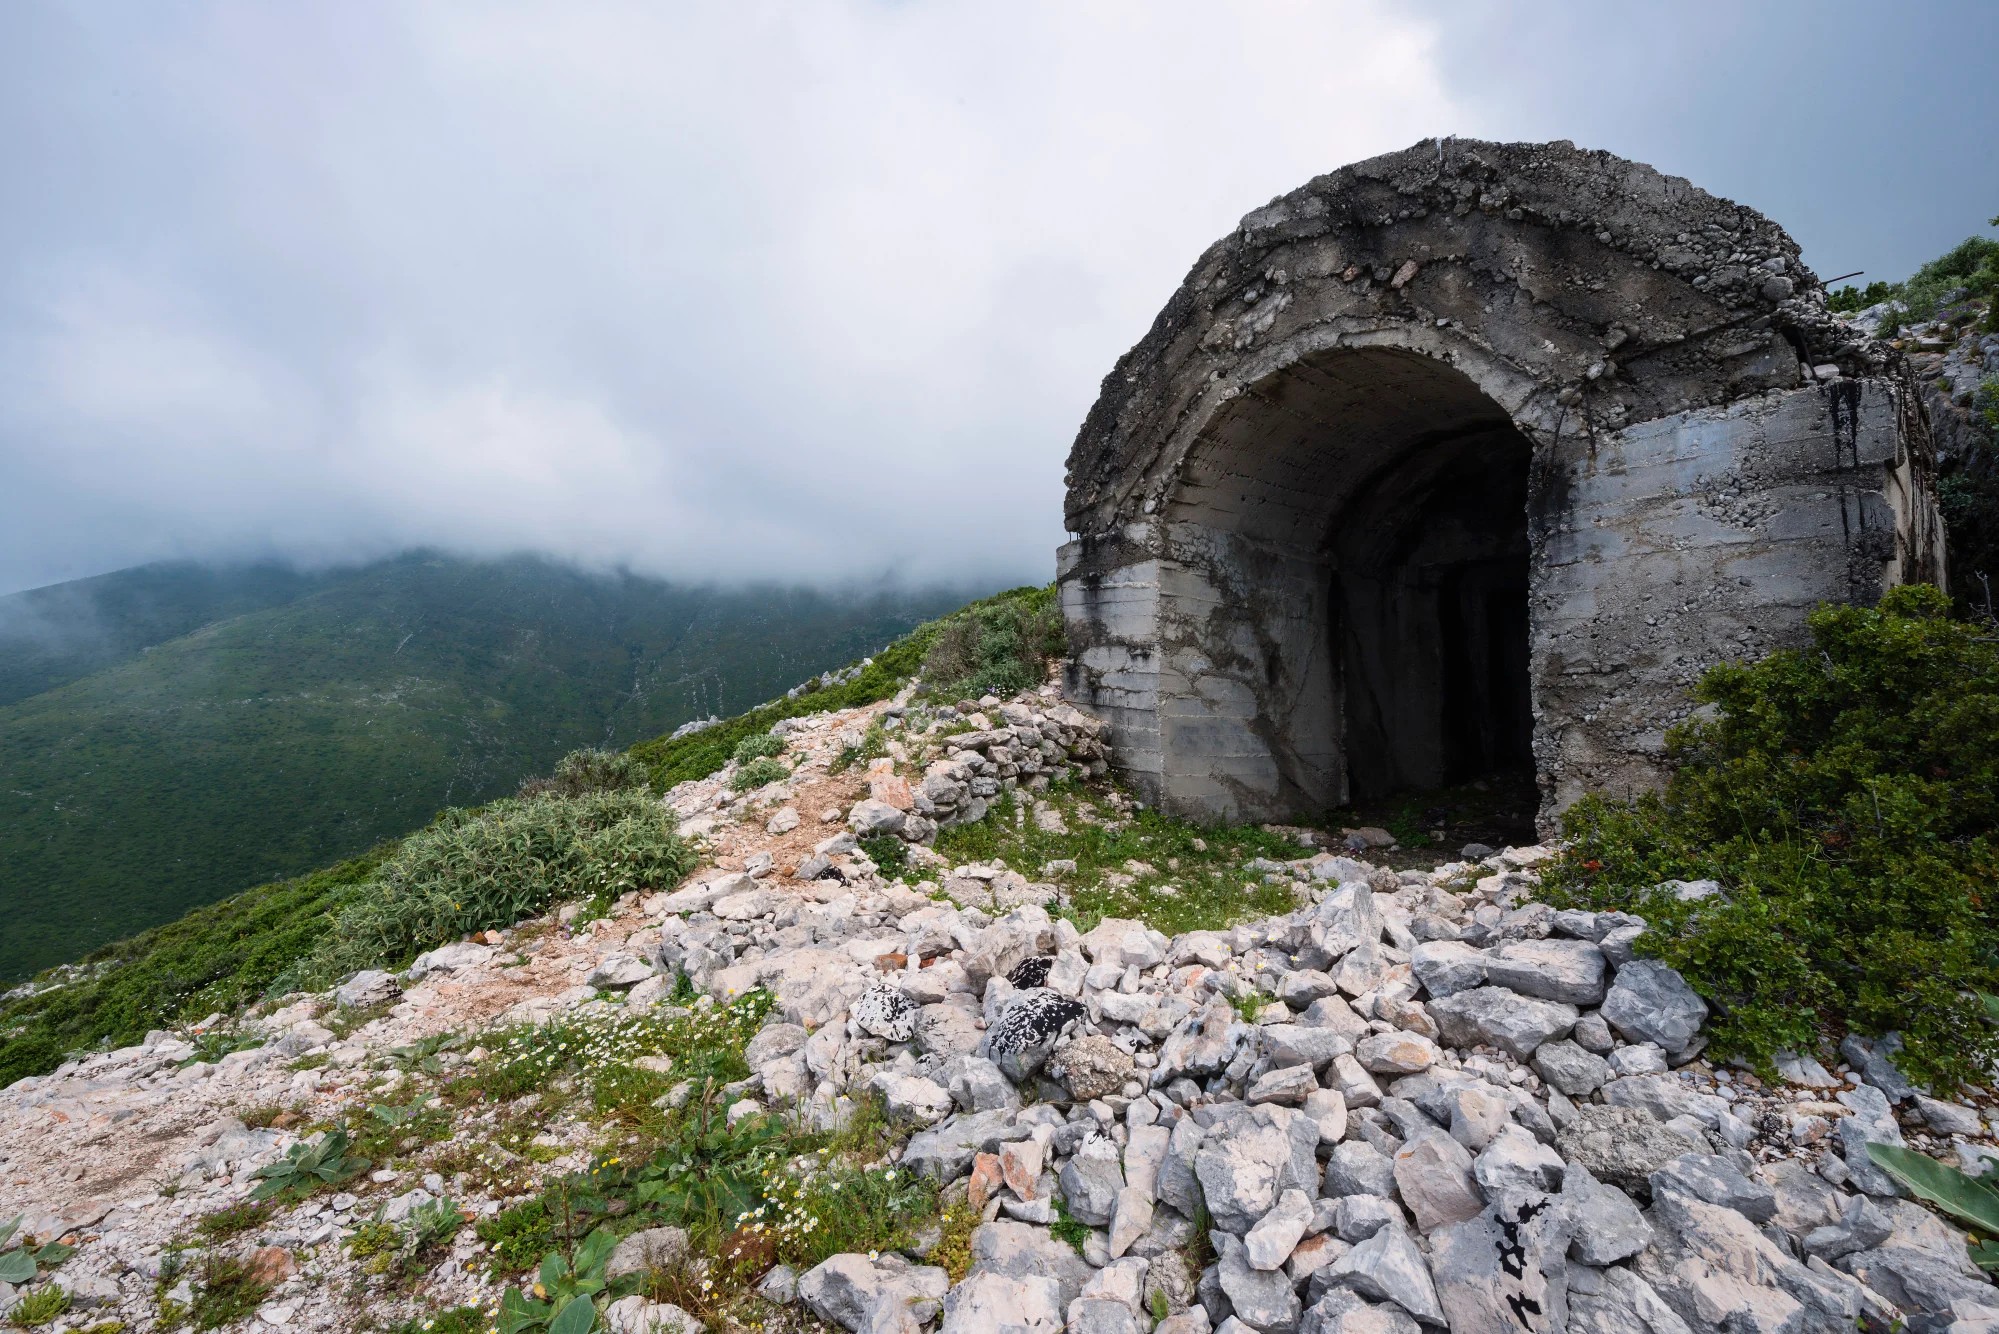 Hơn 200.000 boongke được xây dựng ở Albania, chủ yếu từ năm 1972 đến năm 1984, dưới sự cai trị của Enver Hoxha. Các boongke này nhằm mục đích phòng thủ trong trường hợp bị quân đội nước ngoài xâm lược. Ảnh: Getty Images